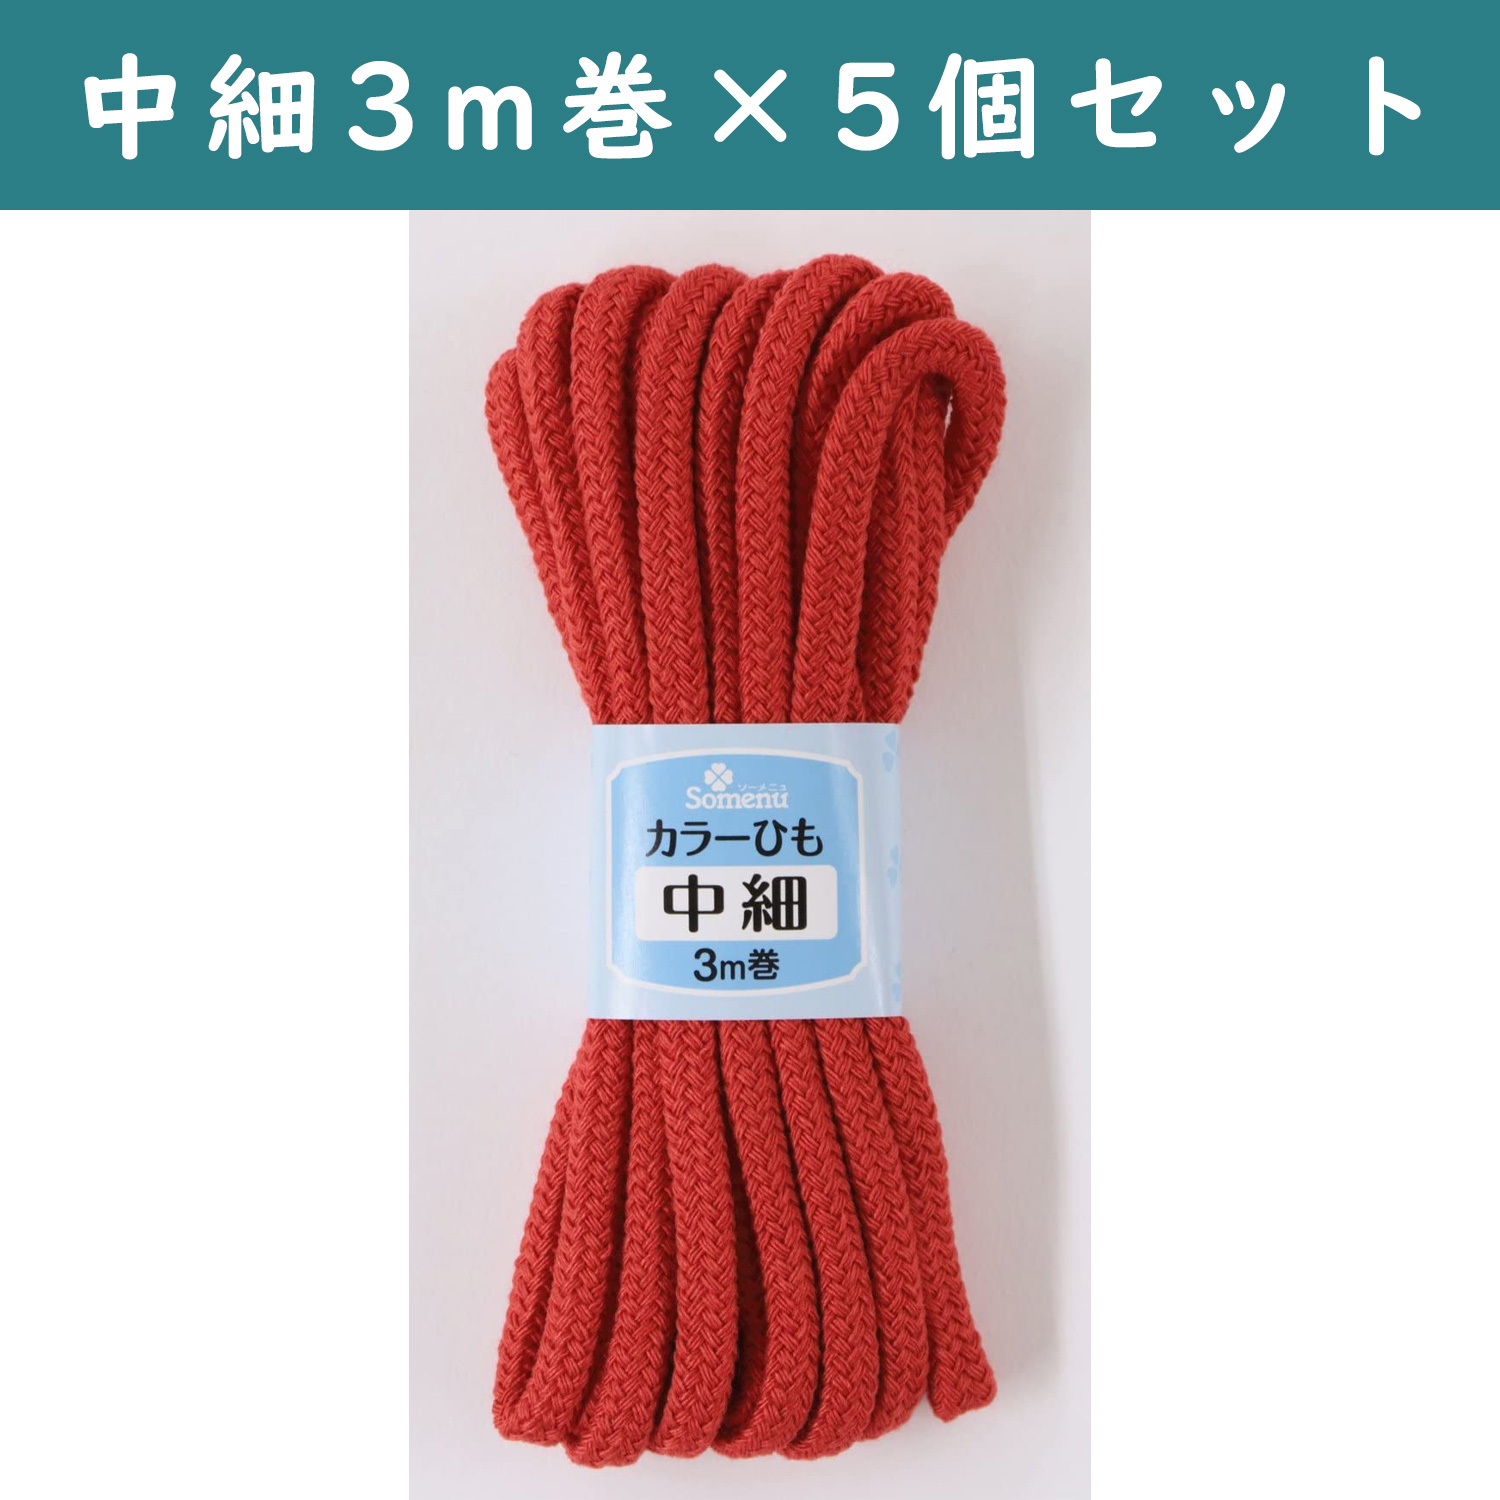 ■【5個】CL26-151-5set カラーひも 中細 3m巻 赤 5個セット (セット)